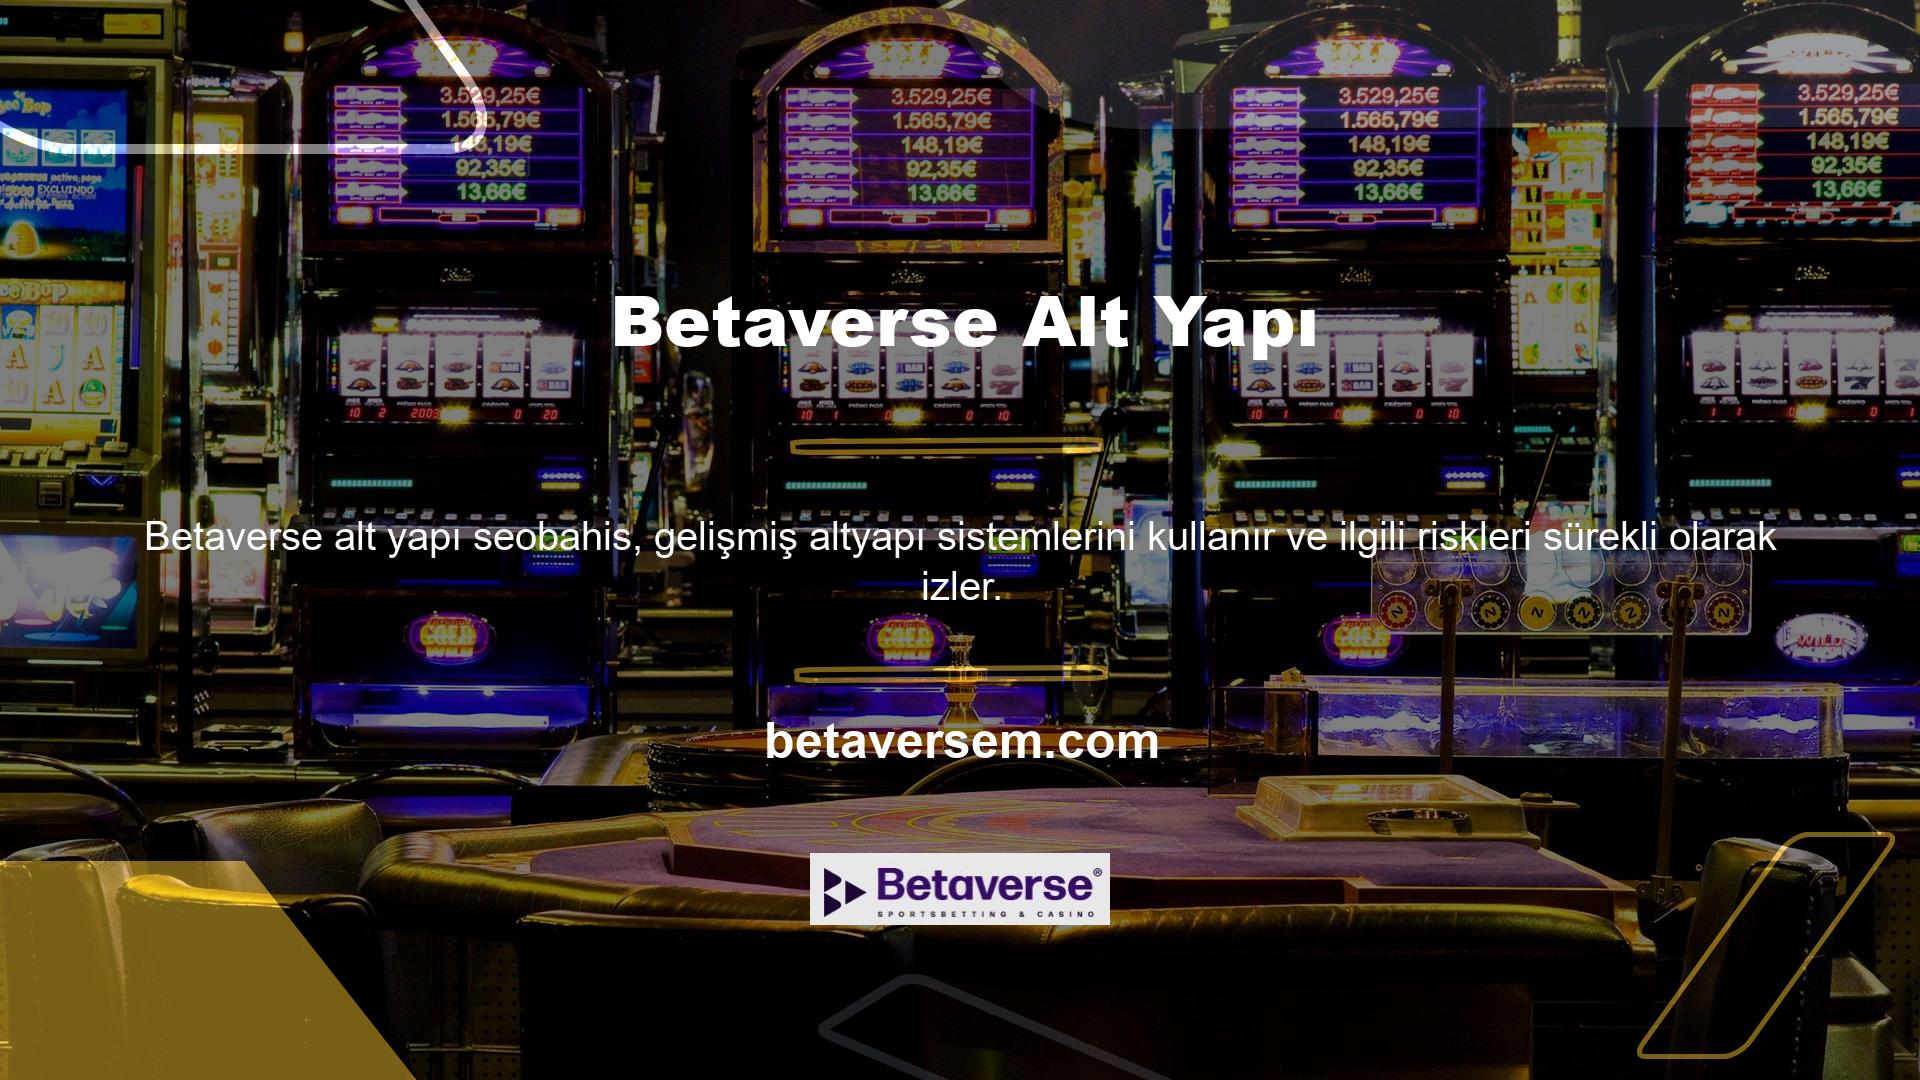 Ek olarak, Betaverse lisanslı bir casino sitesidir